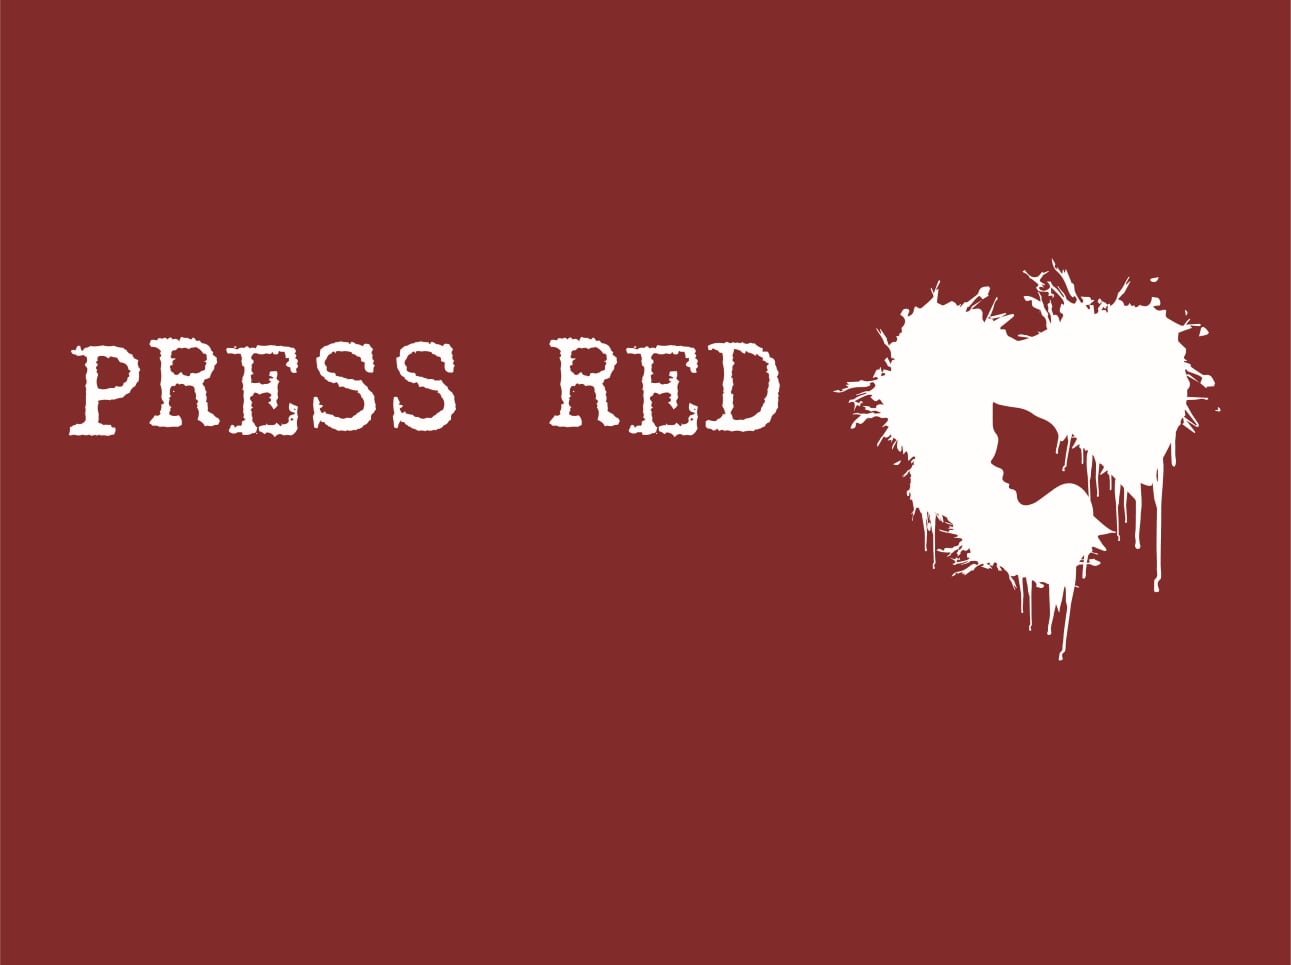 Press Red